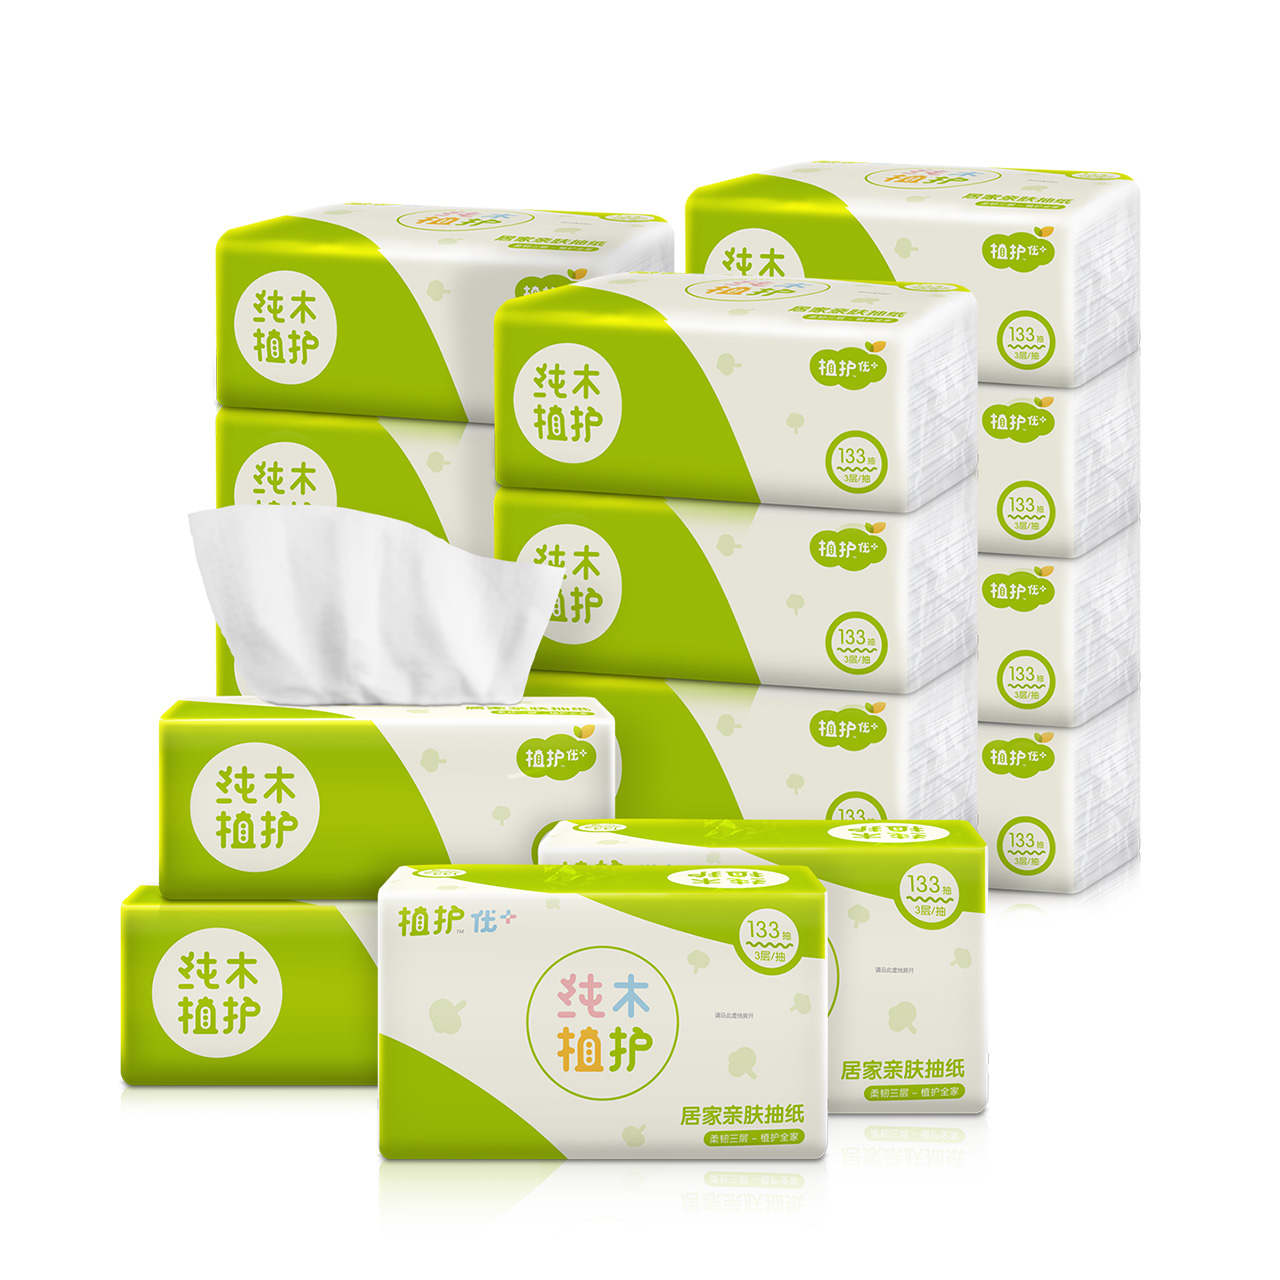 植护居家原木抽纸16包3层抽取式面巾婴儿卫生纸巾餐巾家庭装整箱